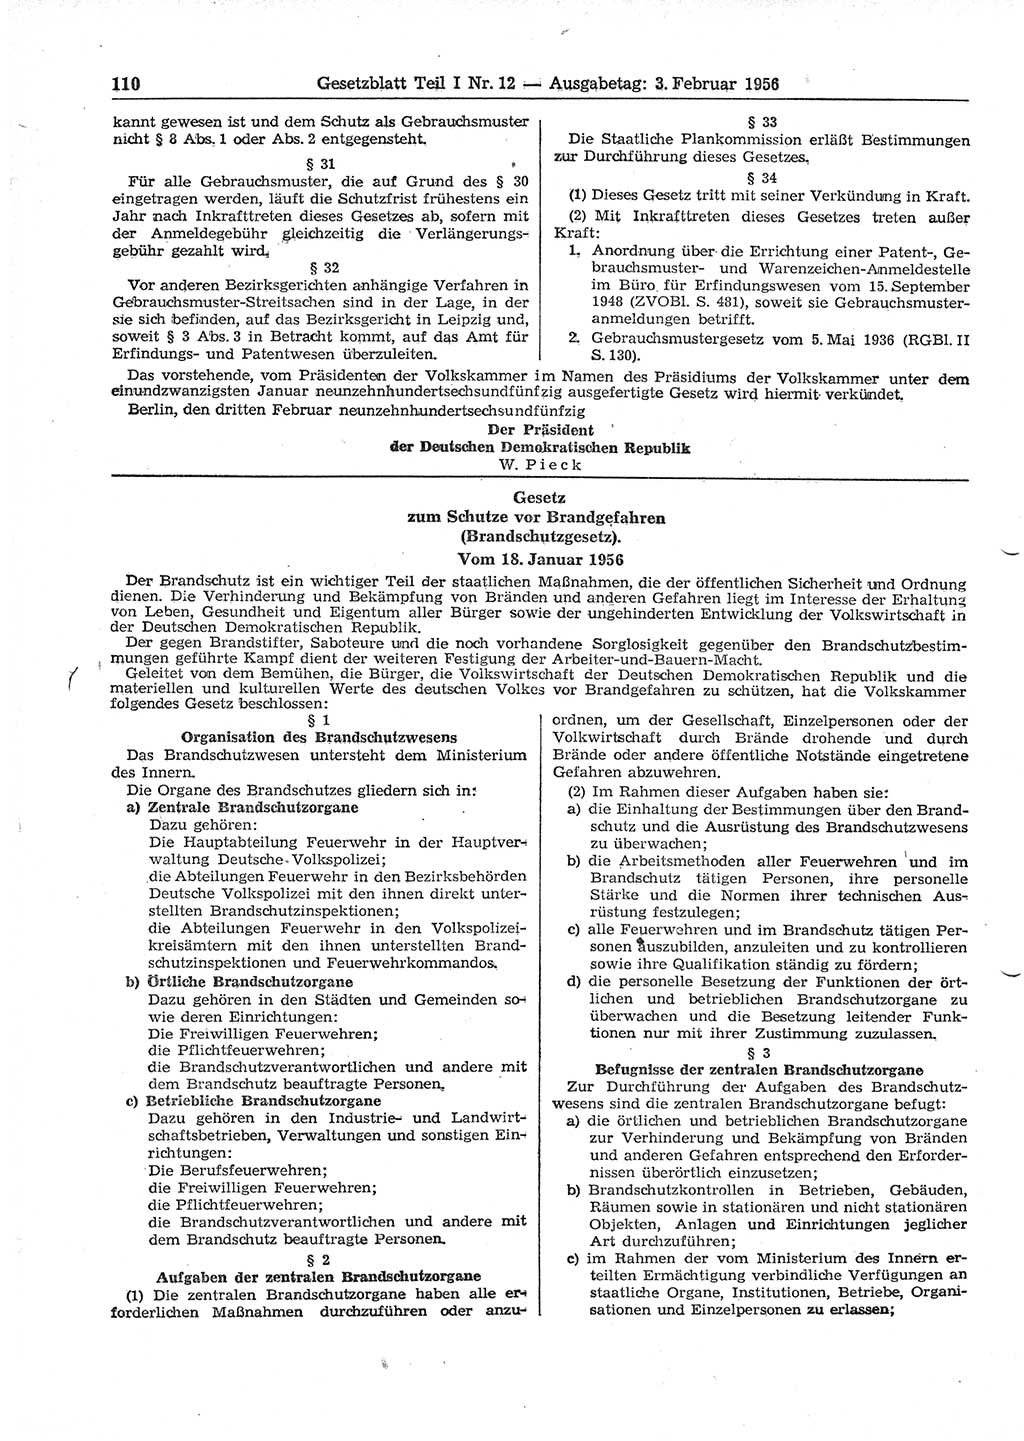 Gesetzblatt (GBl.) der Deutschen Demokratischen Republik (DDR) Teil â… 1956, Seite 110 (GBl. DDR â… 1956, S. 110)